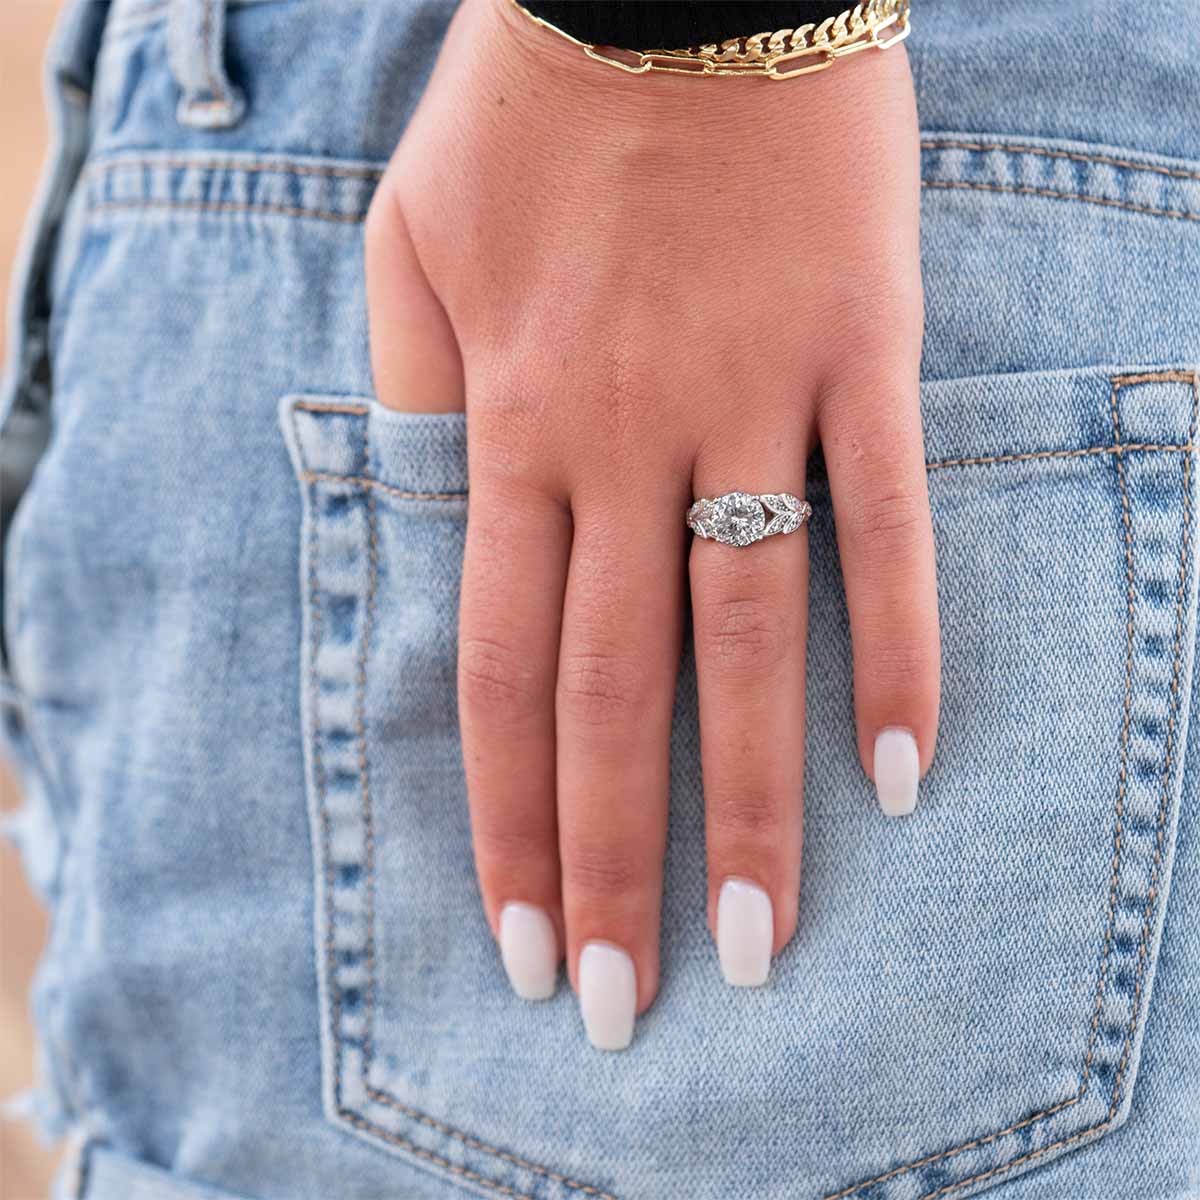 Women's Unique Engagement Rings